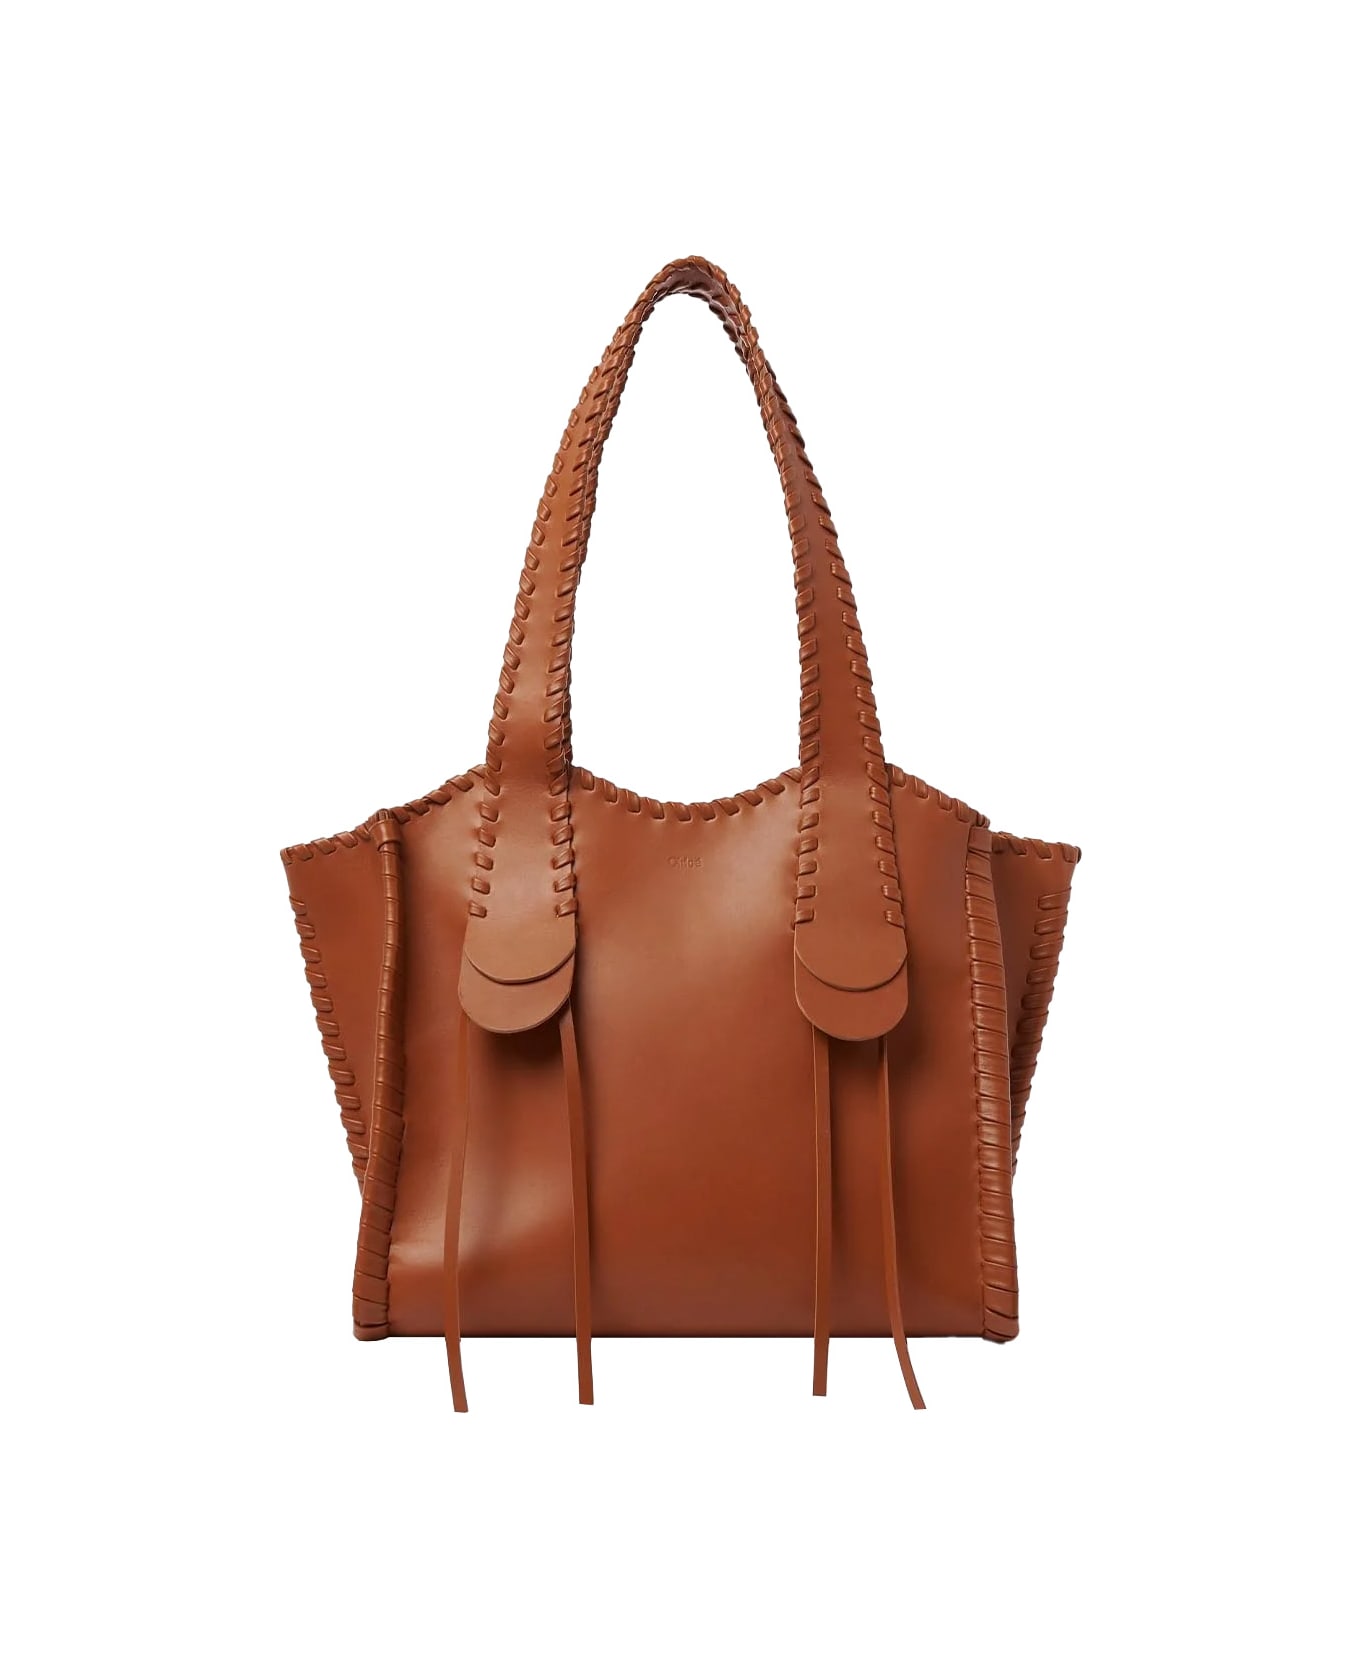 Chloé Caramel Medium Mony Handbag - Brown トートバッグ